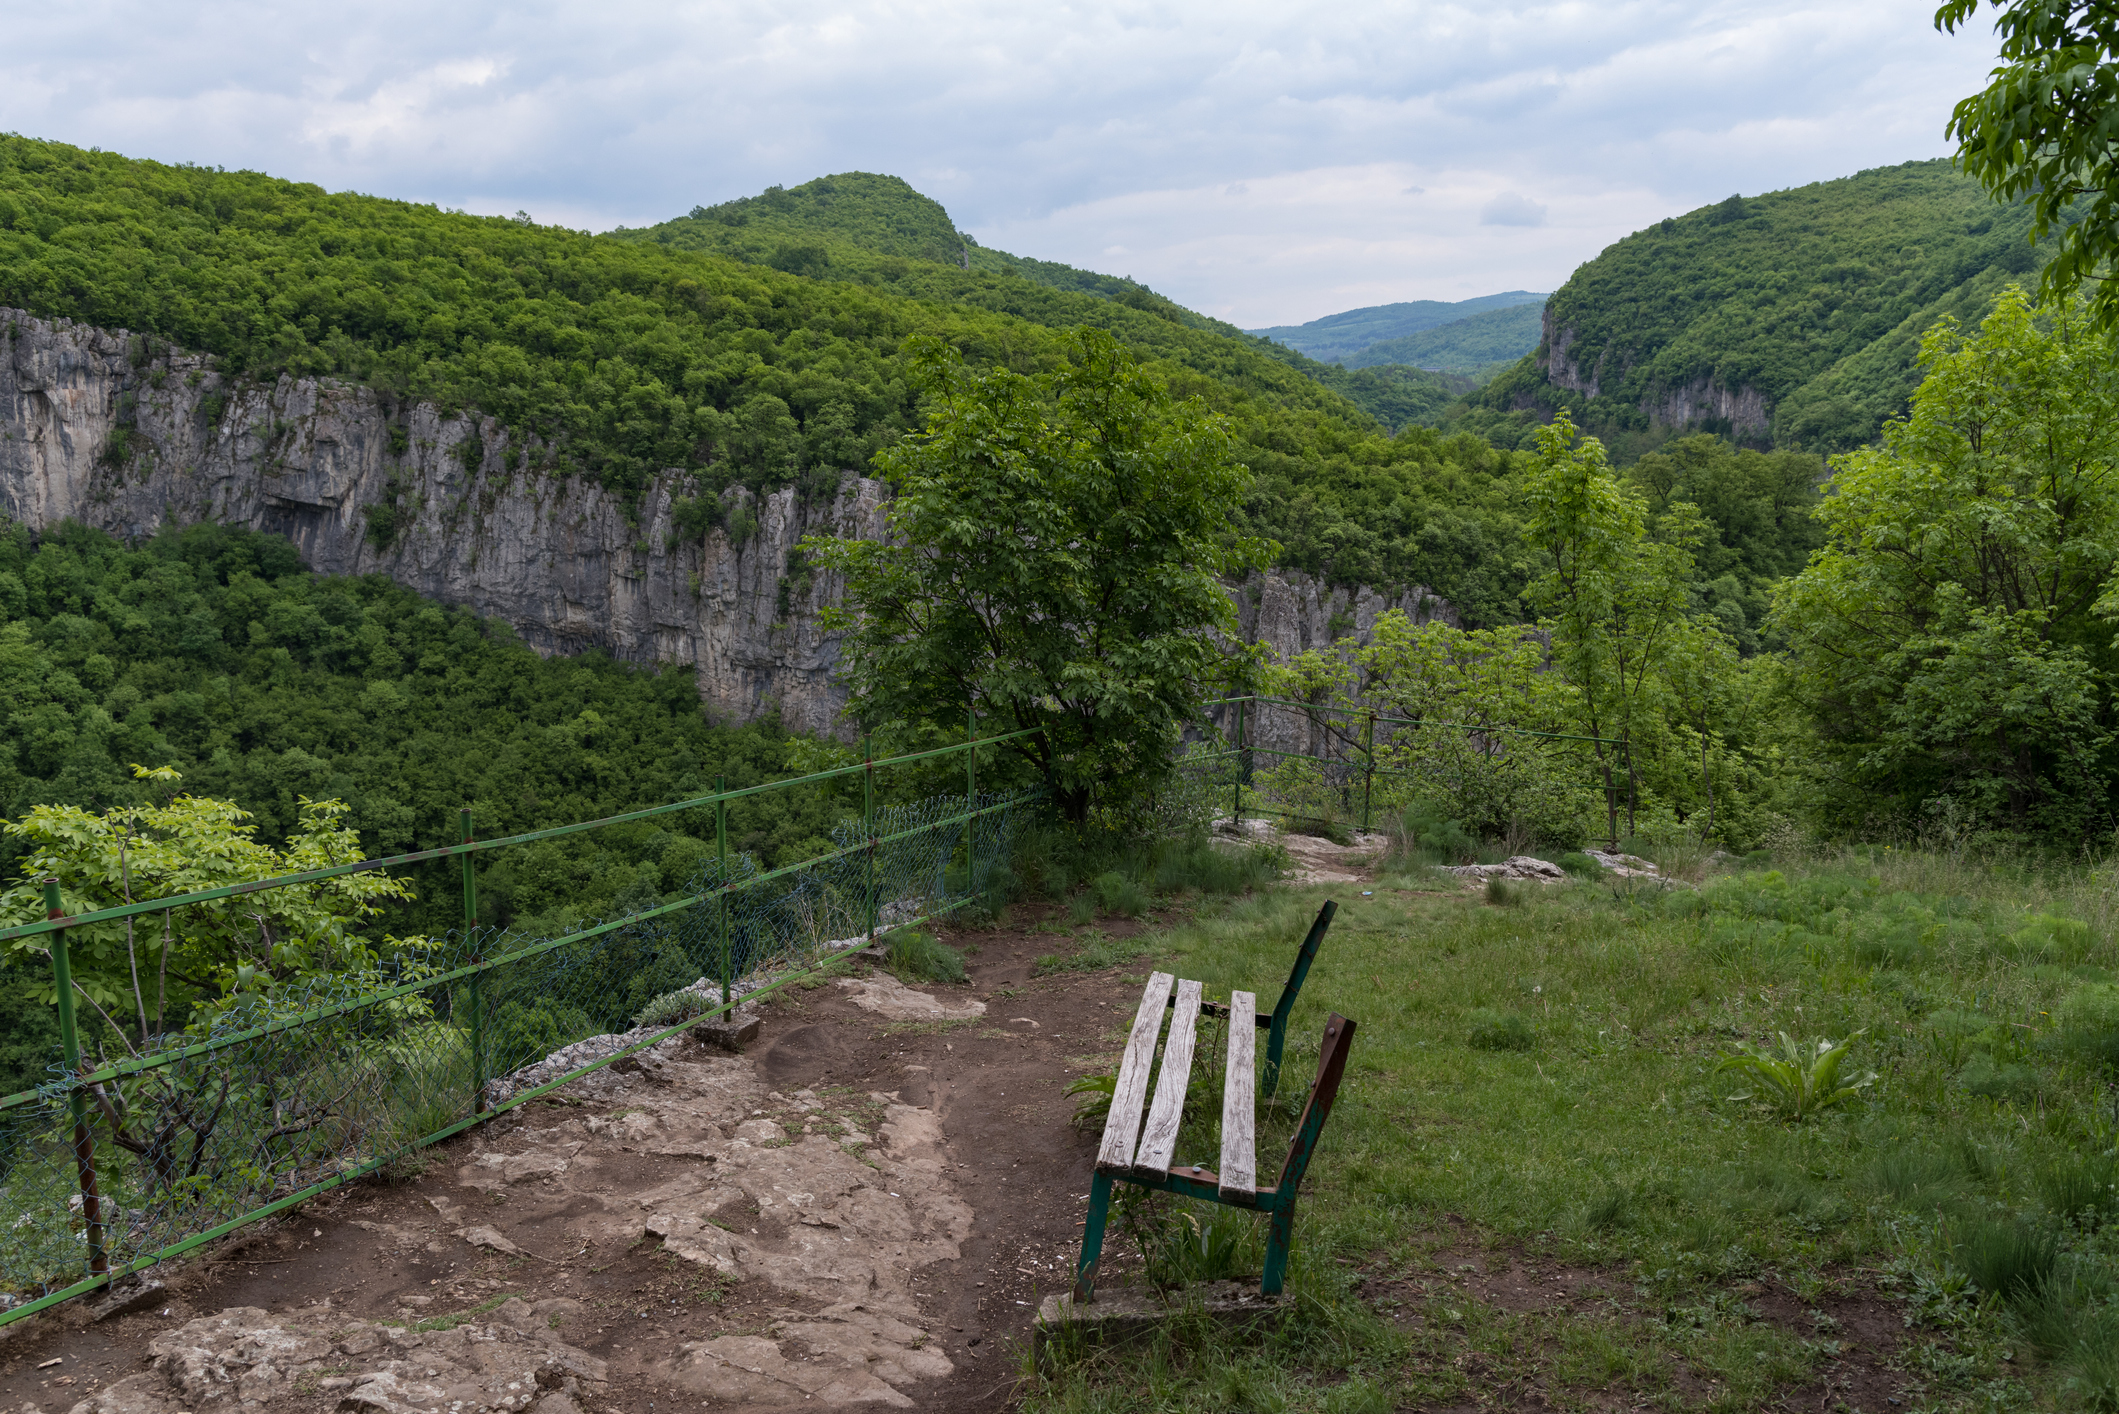 <p><strong>Пейката на любовта</strong></p>

<p>Пейката се намира на скалите над Дряновския манастир и е част от Дряновската екопътека, която започва при входа на пещера &quot;Бачо Киро&quot;.&nbsp;Общо има създадени три такива панорамни кътчета по екопътеката (с пейки и ограда), които откриват великолепни гледки към манастира и чудесната природа наоколо.&nbsp;В началото на&nbsp;август 2013 г. пейката и пространството около нея са сериозно облагородени, за да излезе отново наяве магията на това място, където преминаващите да могат да поспрат и да се полюбуват на всичко наоколо.&nbsp;Предназначена е за всички, които изпитват любов &ndash;&nbsp;към половинката, приятелите, природата или нещо друго.</p>

<p>&nbsp;</p>